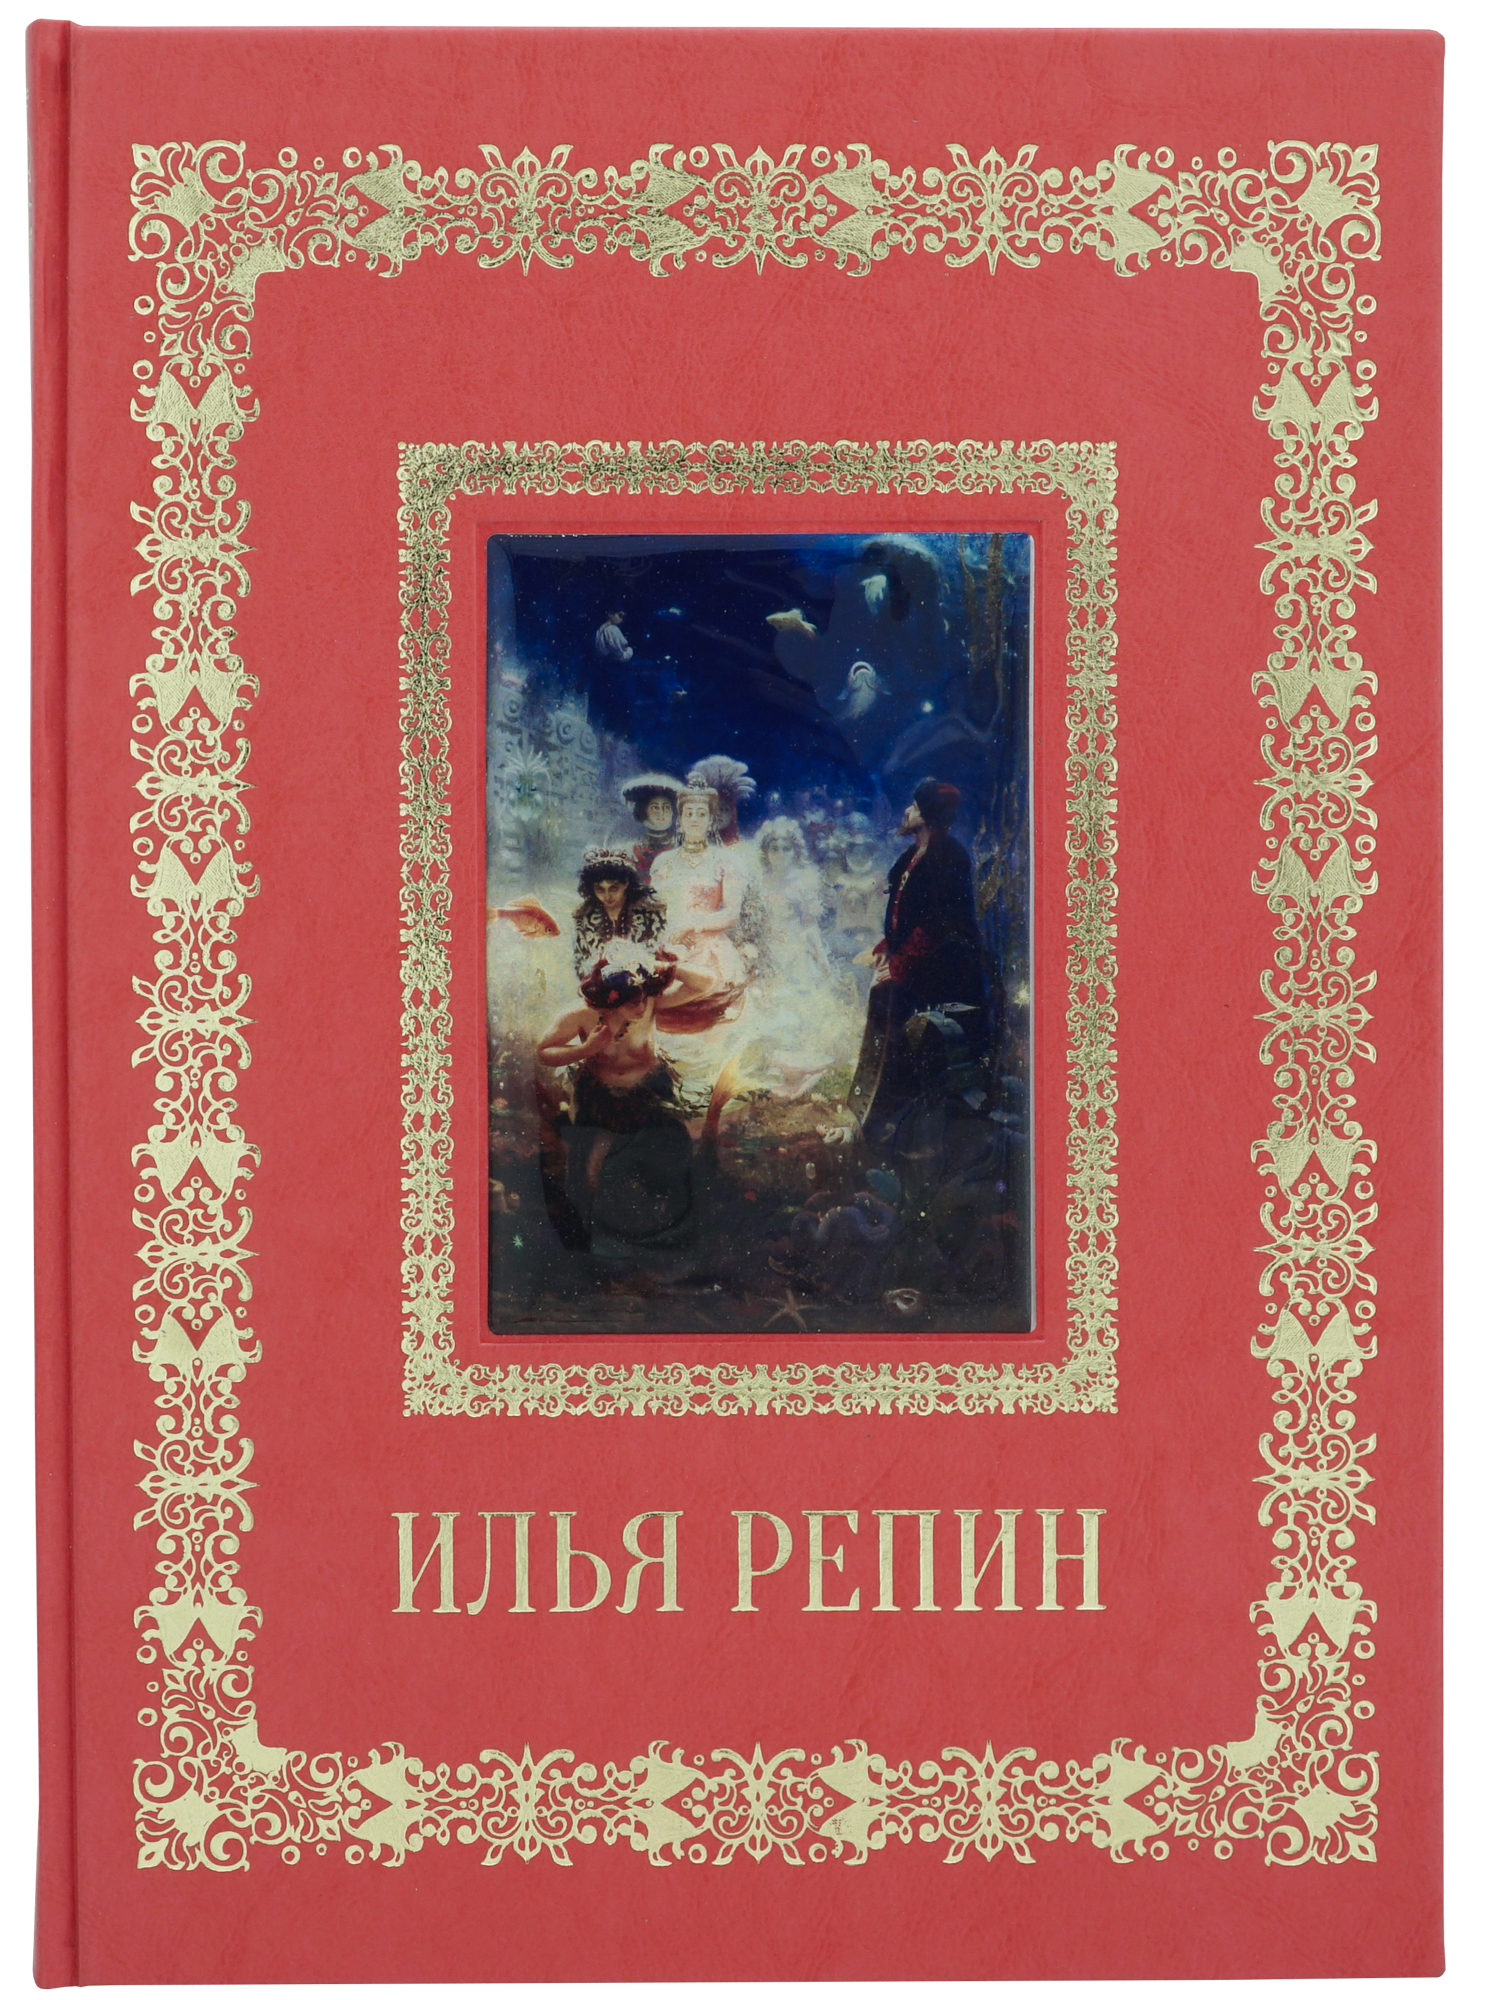 Астахов Андрей Юрьевич , Подарочная книга «Илья Репин. Великие полотна»